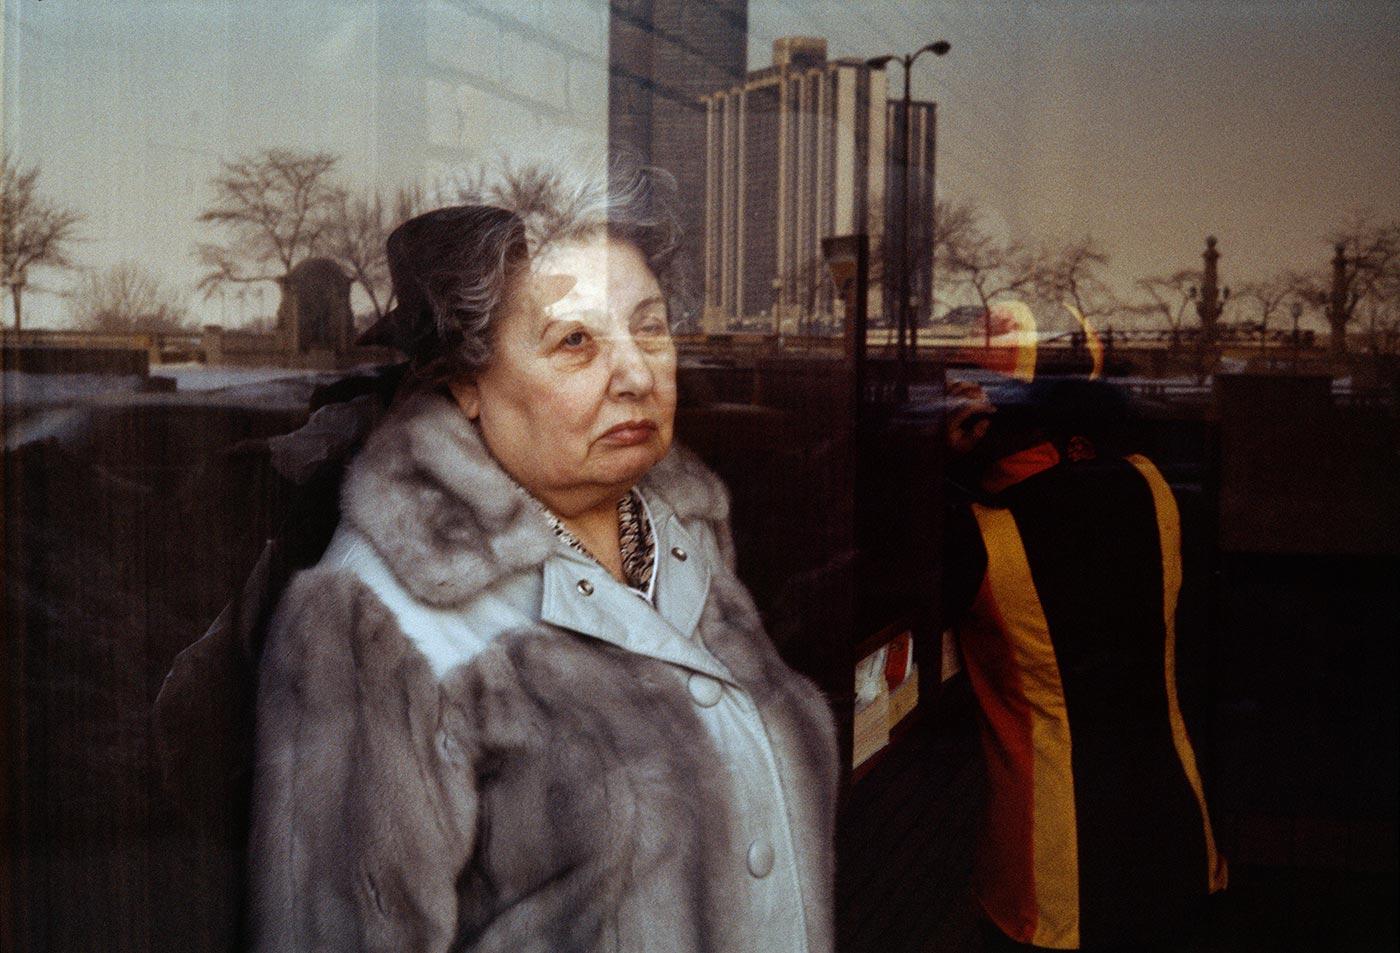 Fotó: Vivian Maier: 1979 © Vivian Maier/Maloof Collection